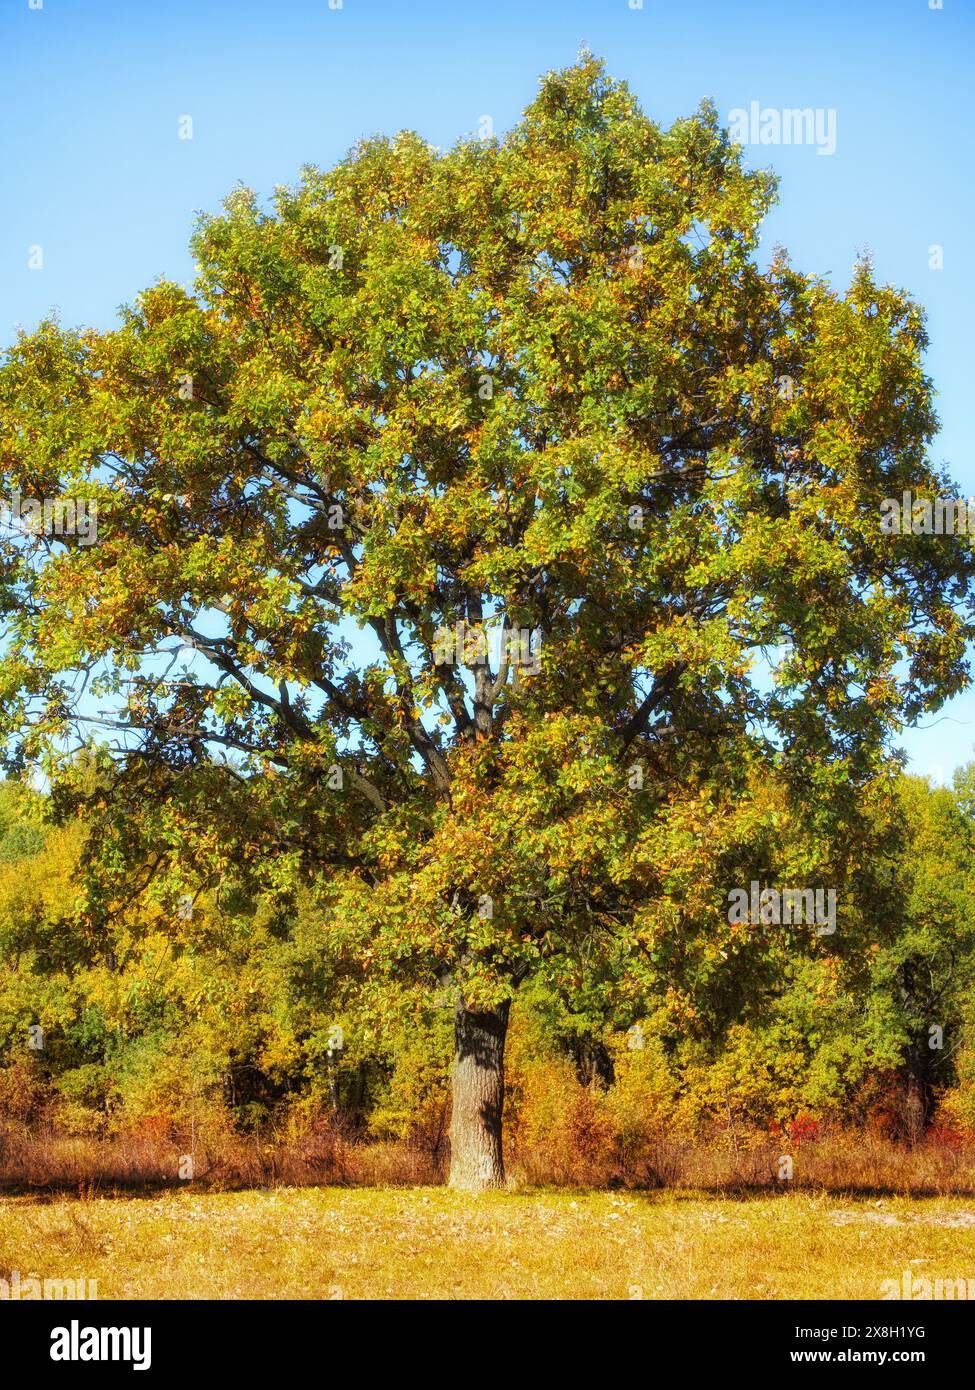 Ein einsamer Baum mit dickem Stamm, dichtem Grün und gelbem Laub, auf einem sonnendurchfluteten Feld, Herbststimmung. Großer Baum, robuster Stamm, grün-gelbe Blätter, blau Stockfoto